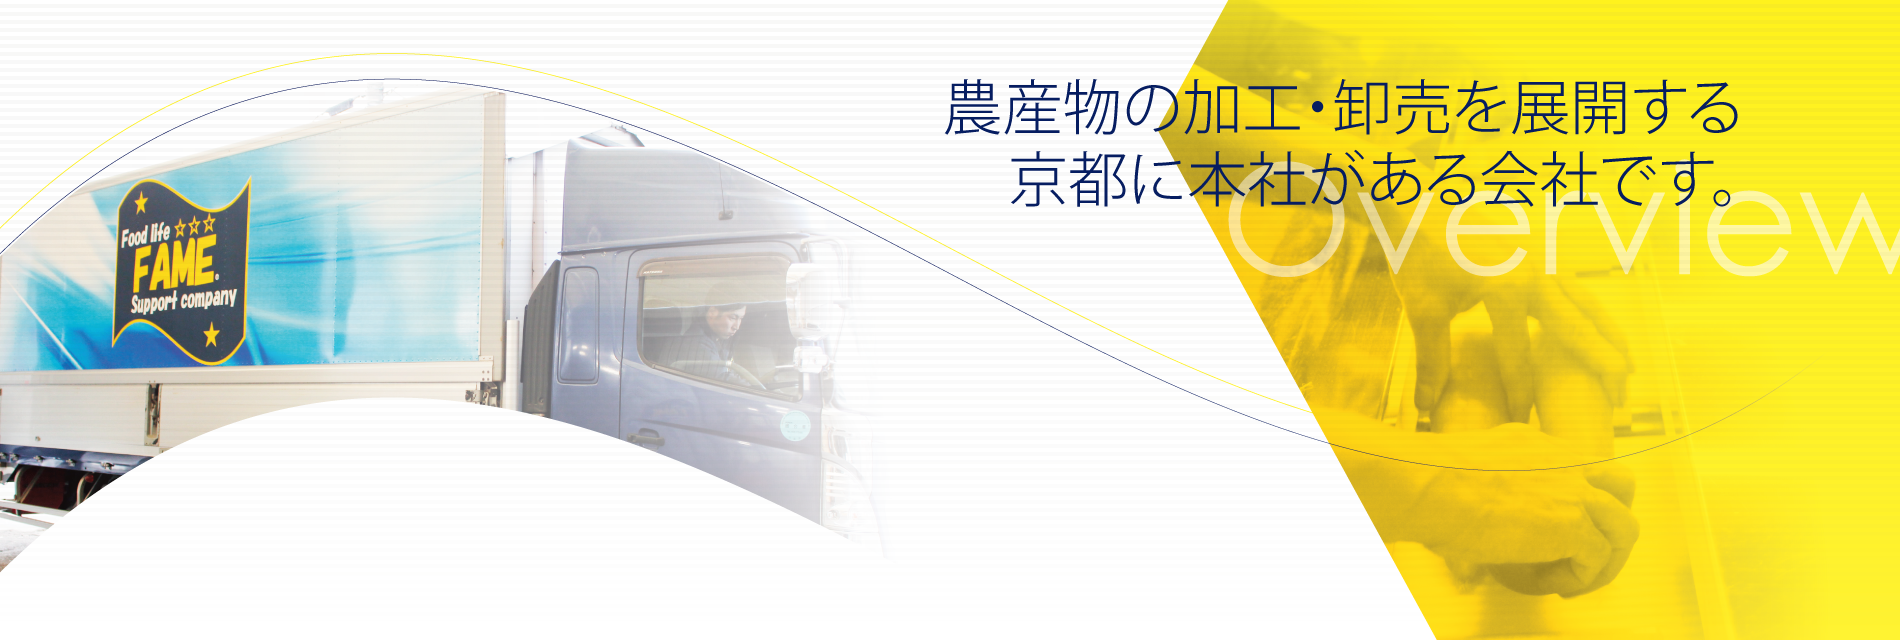 農産物の加工・卸売を展開する 京都に本社がある会社です。